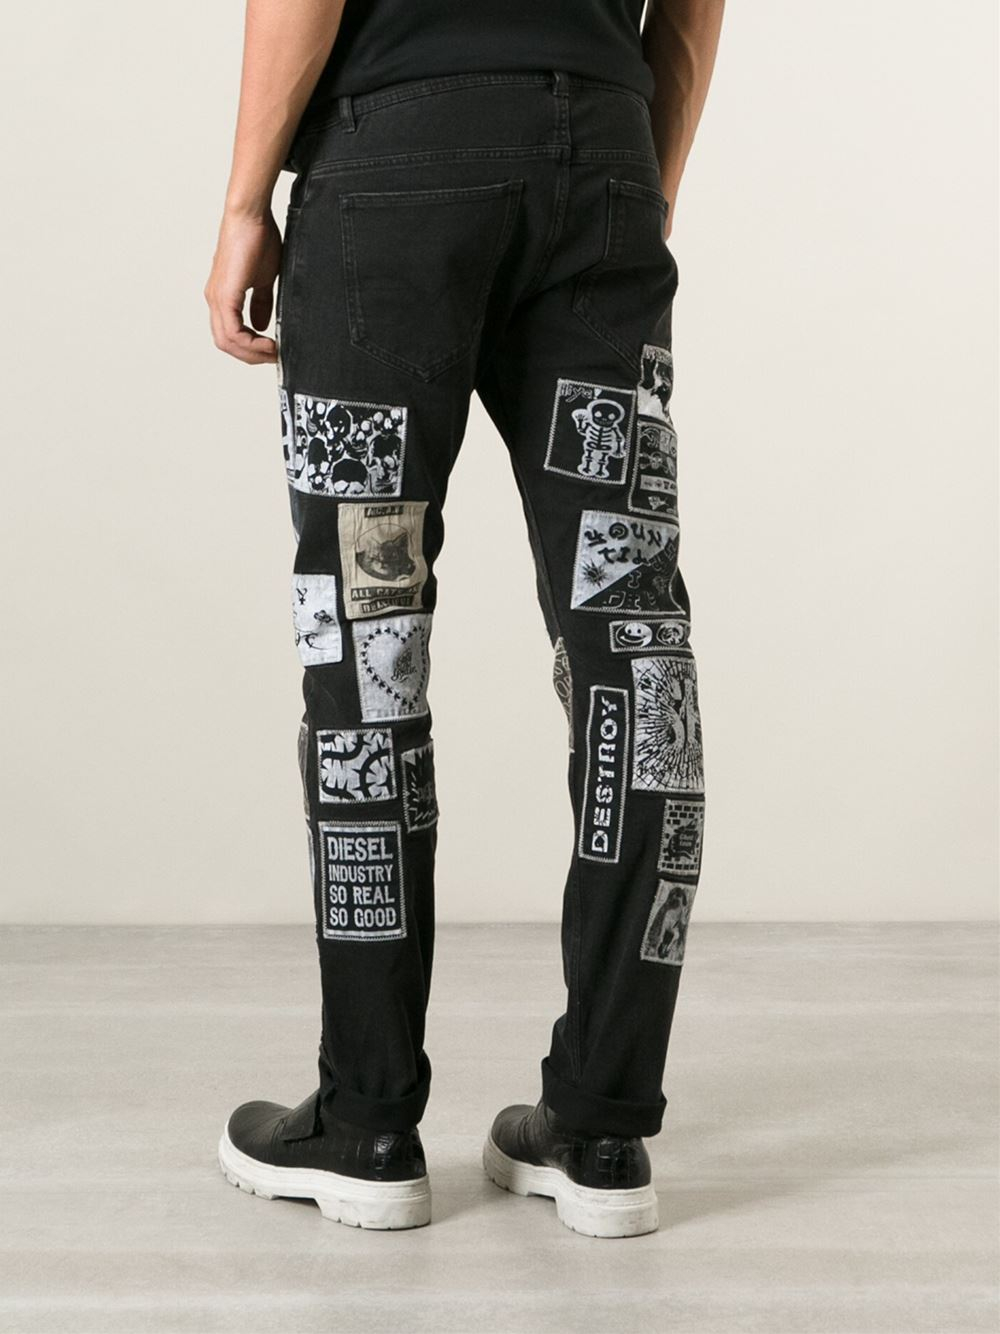 Lyst - Diesel Patch Jeans in Black for Men